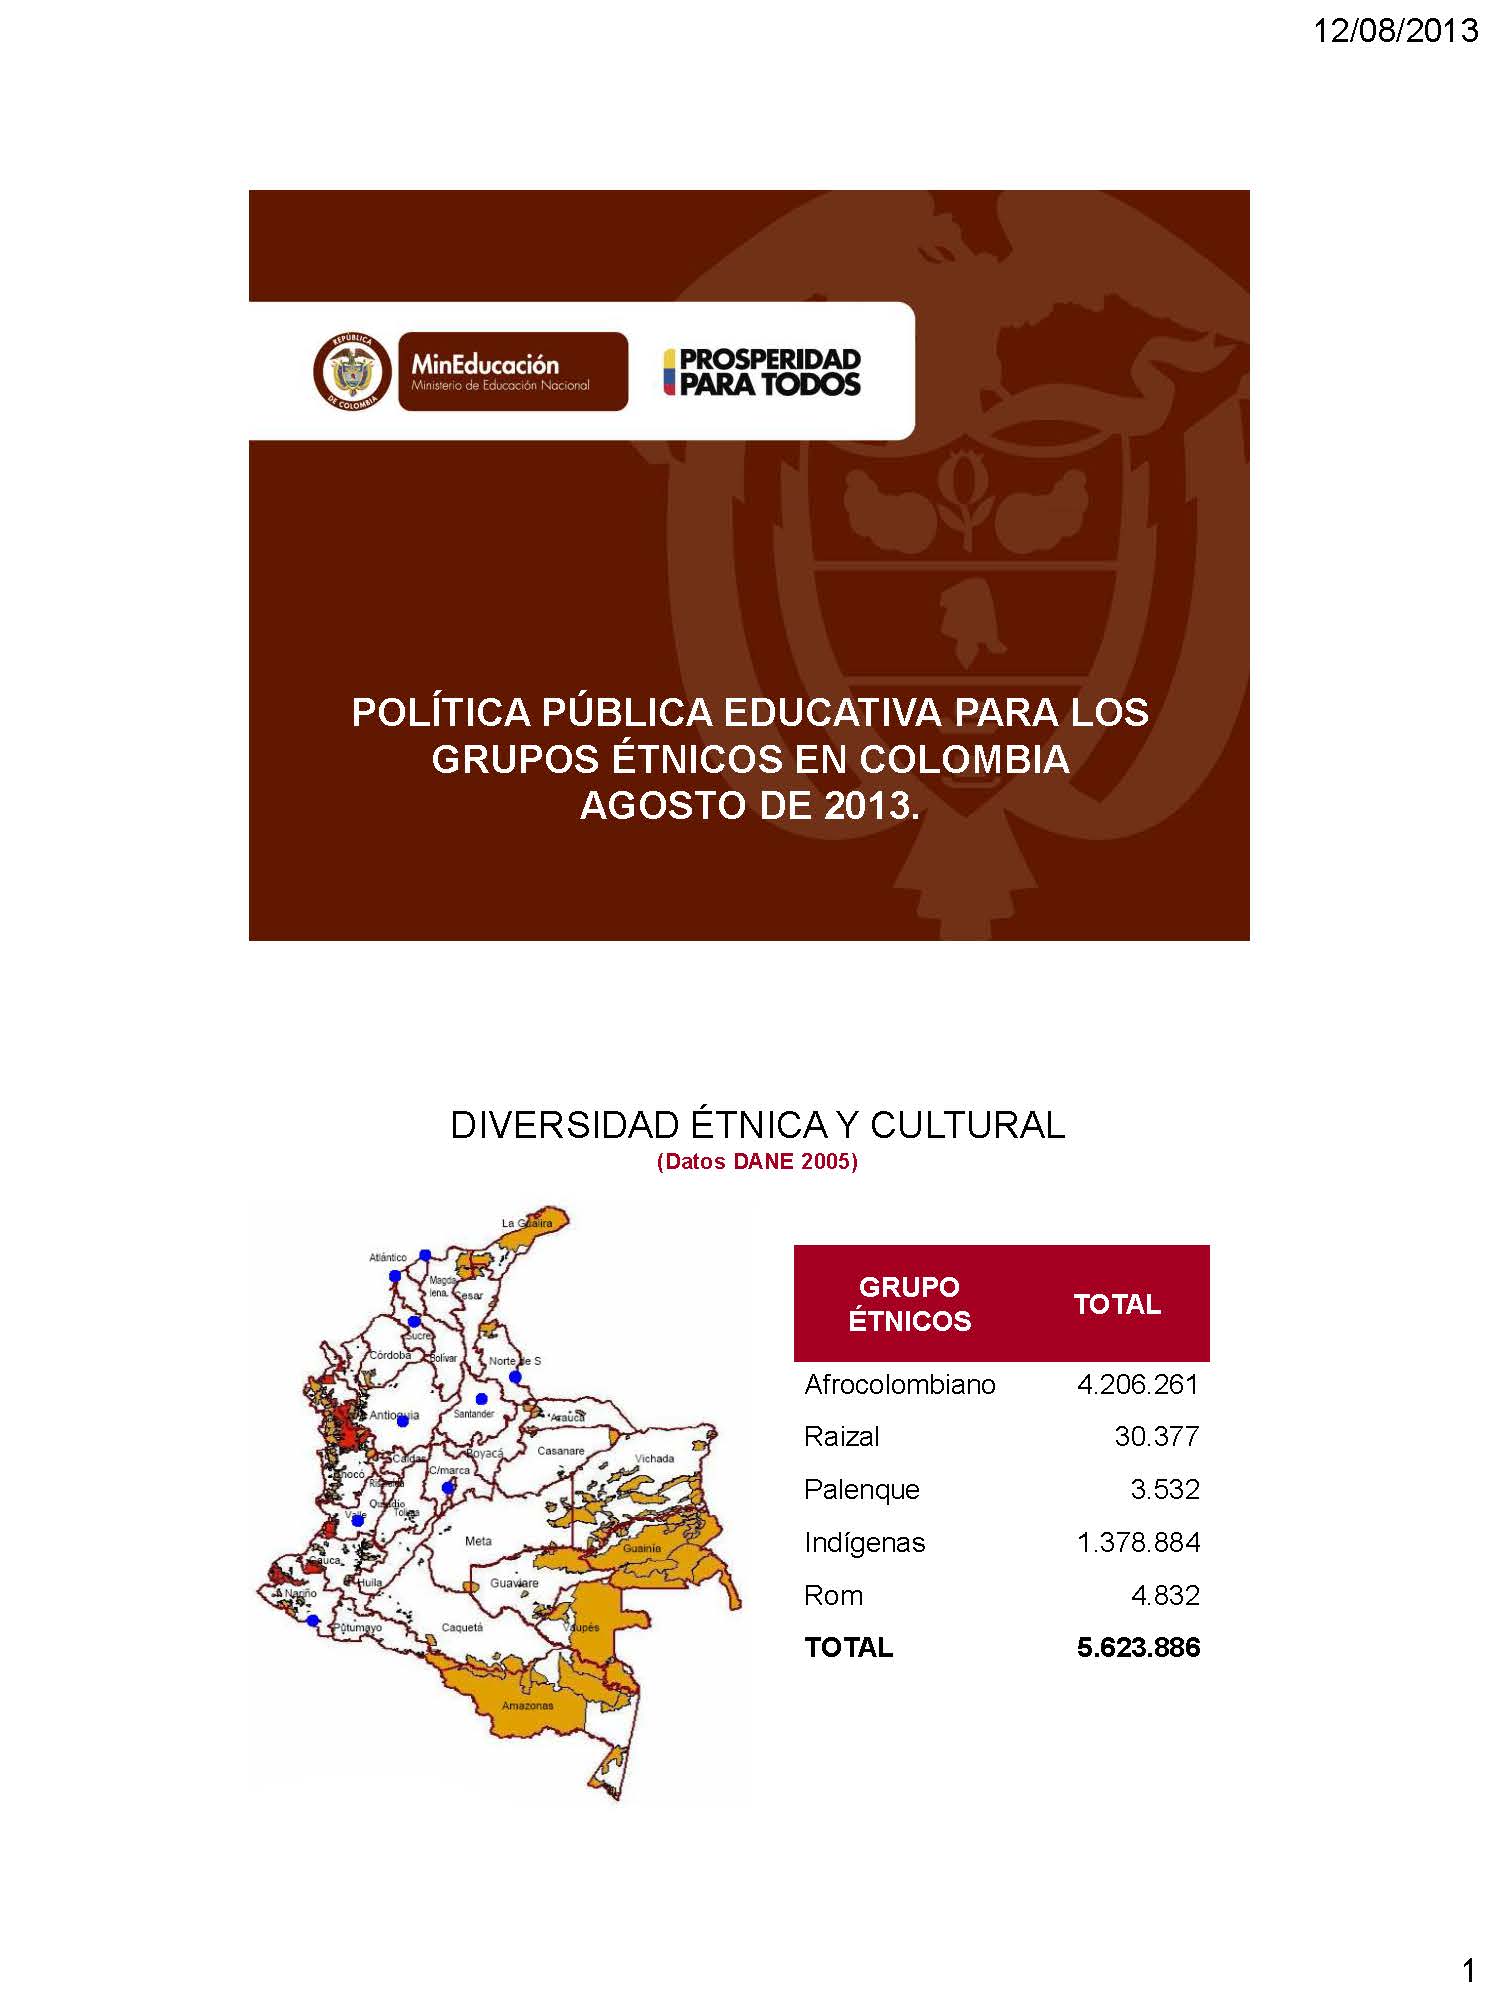 Politica publica educativa para los grupos enicos en Colombia politica